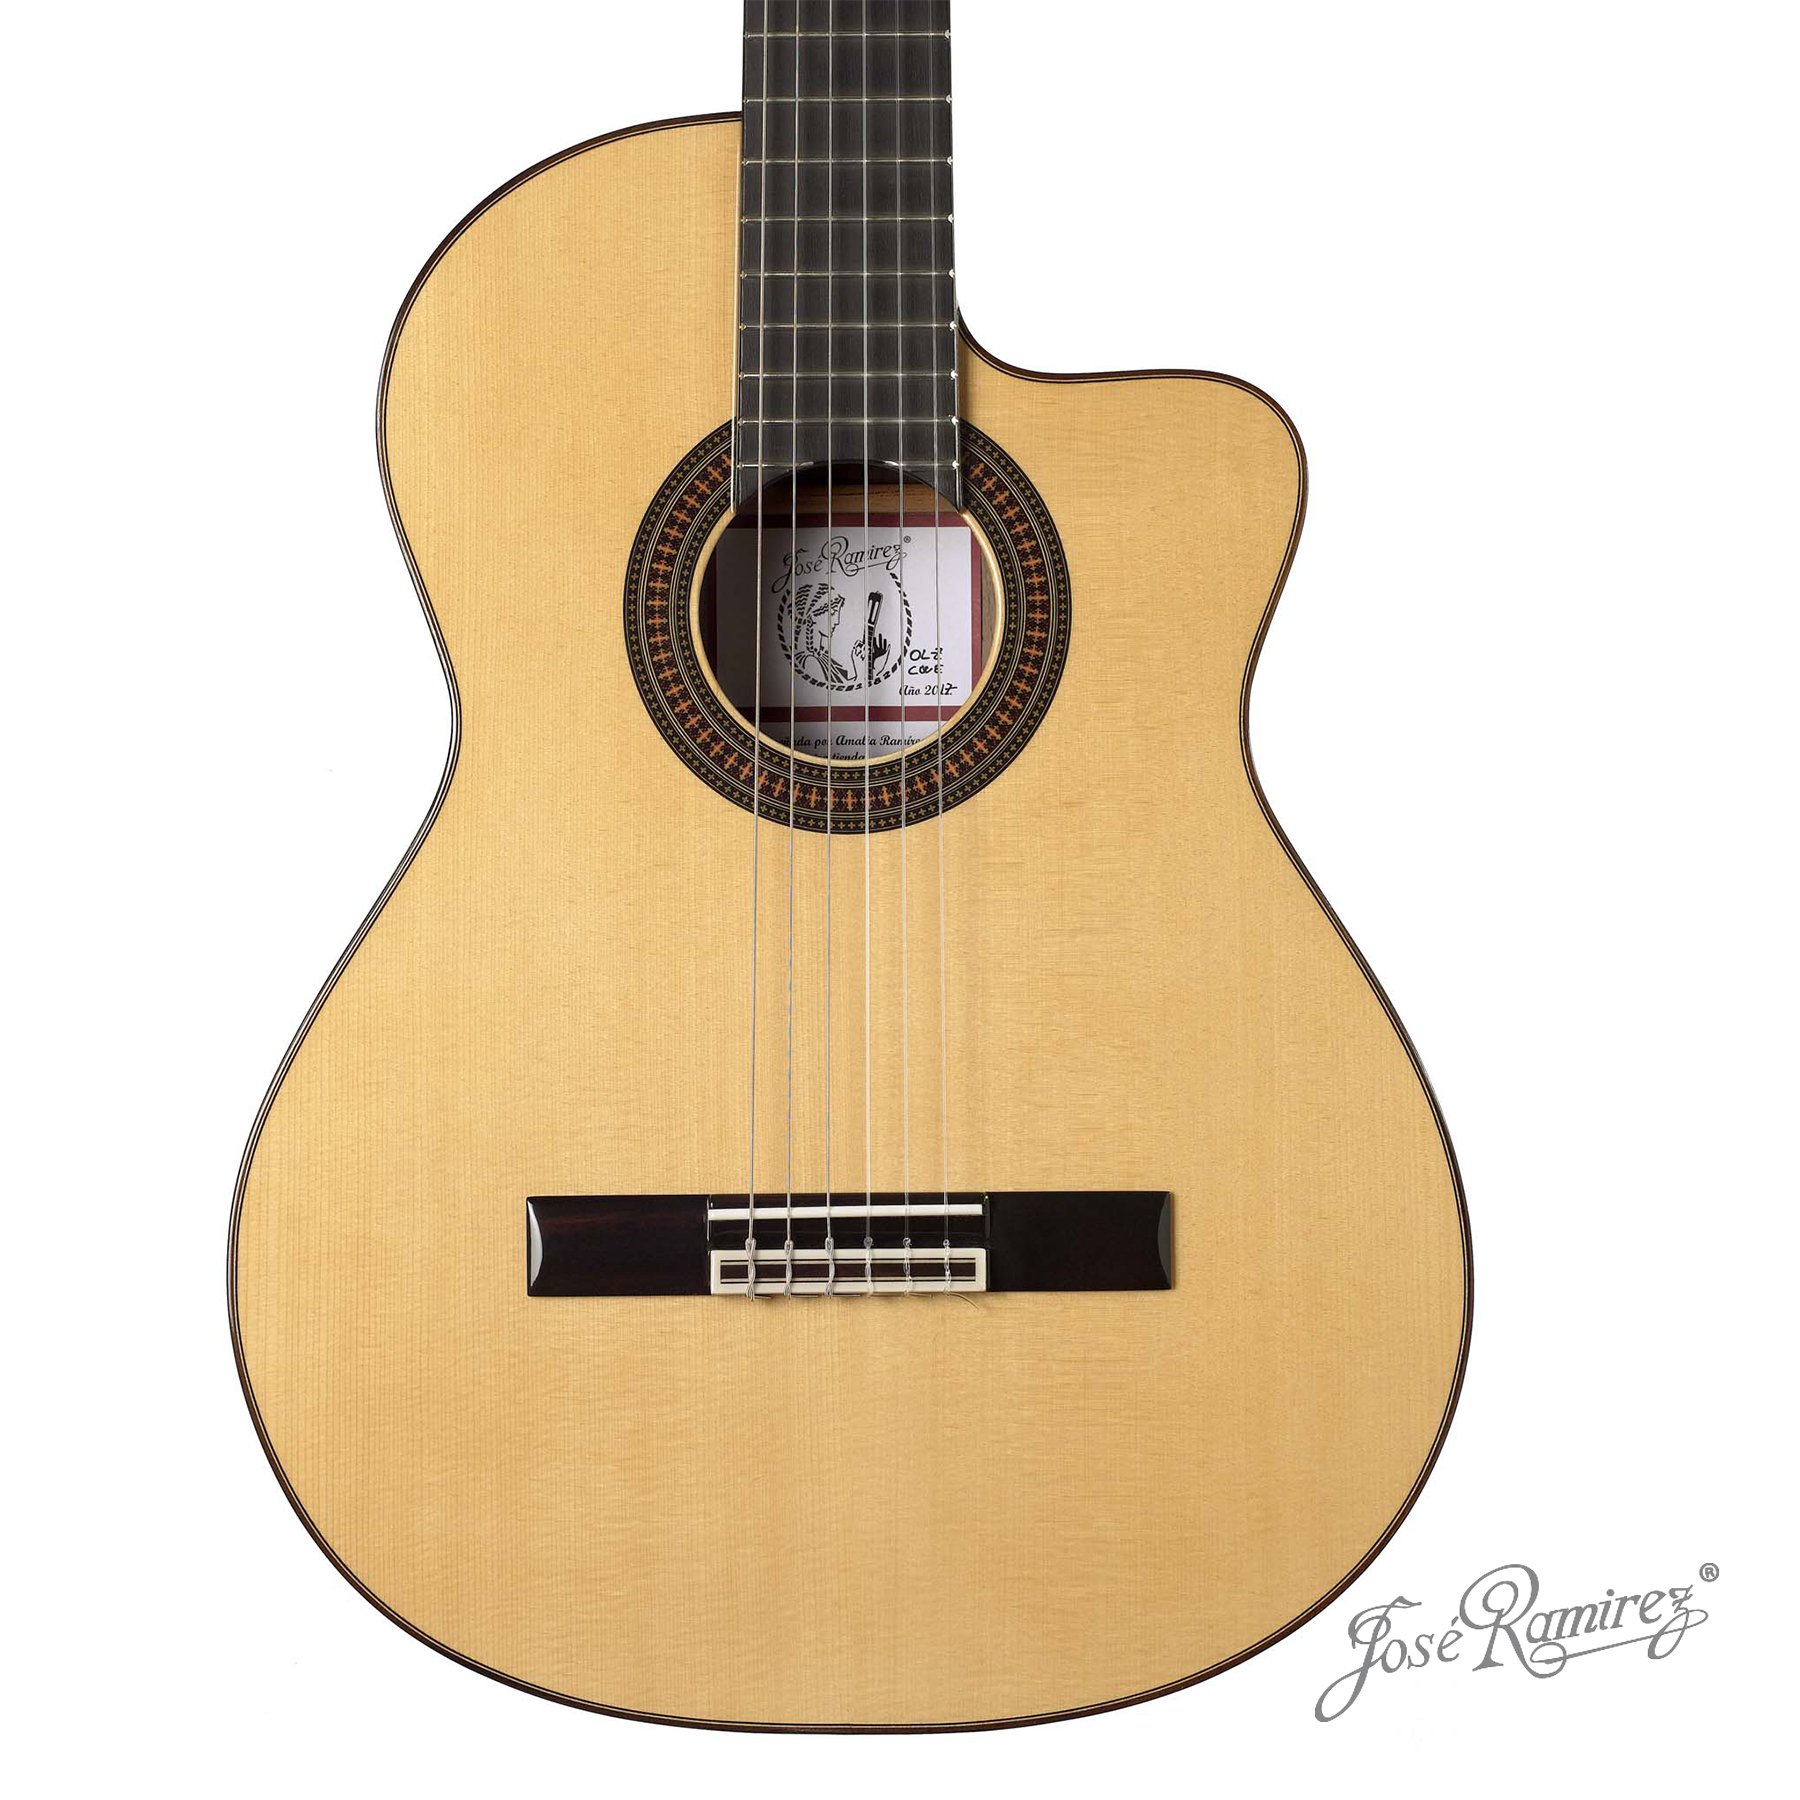 Boca de la guitarra de estudio OLZCWE de diseño exclusivo Ramírez